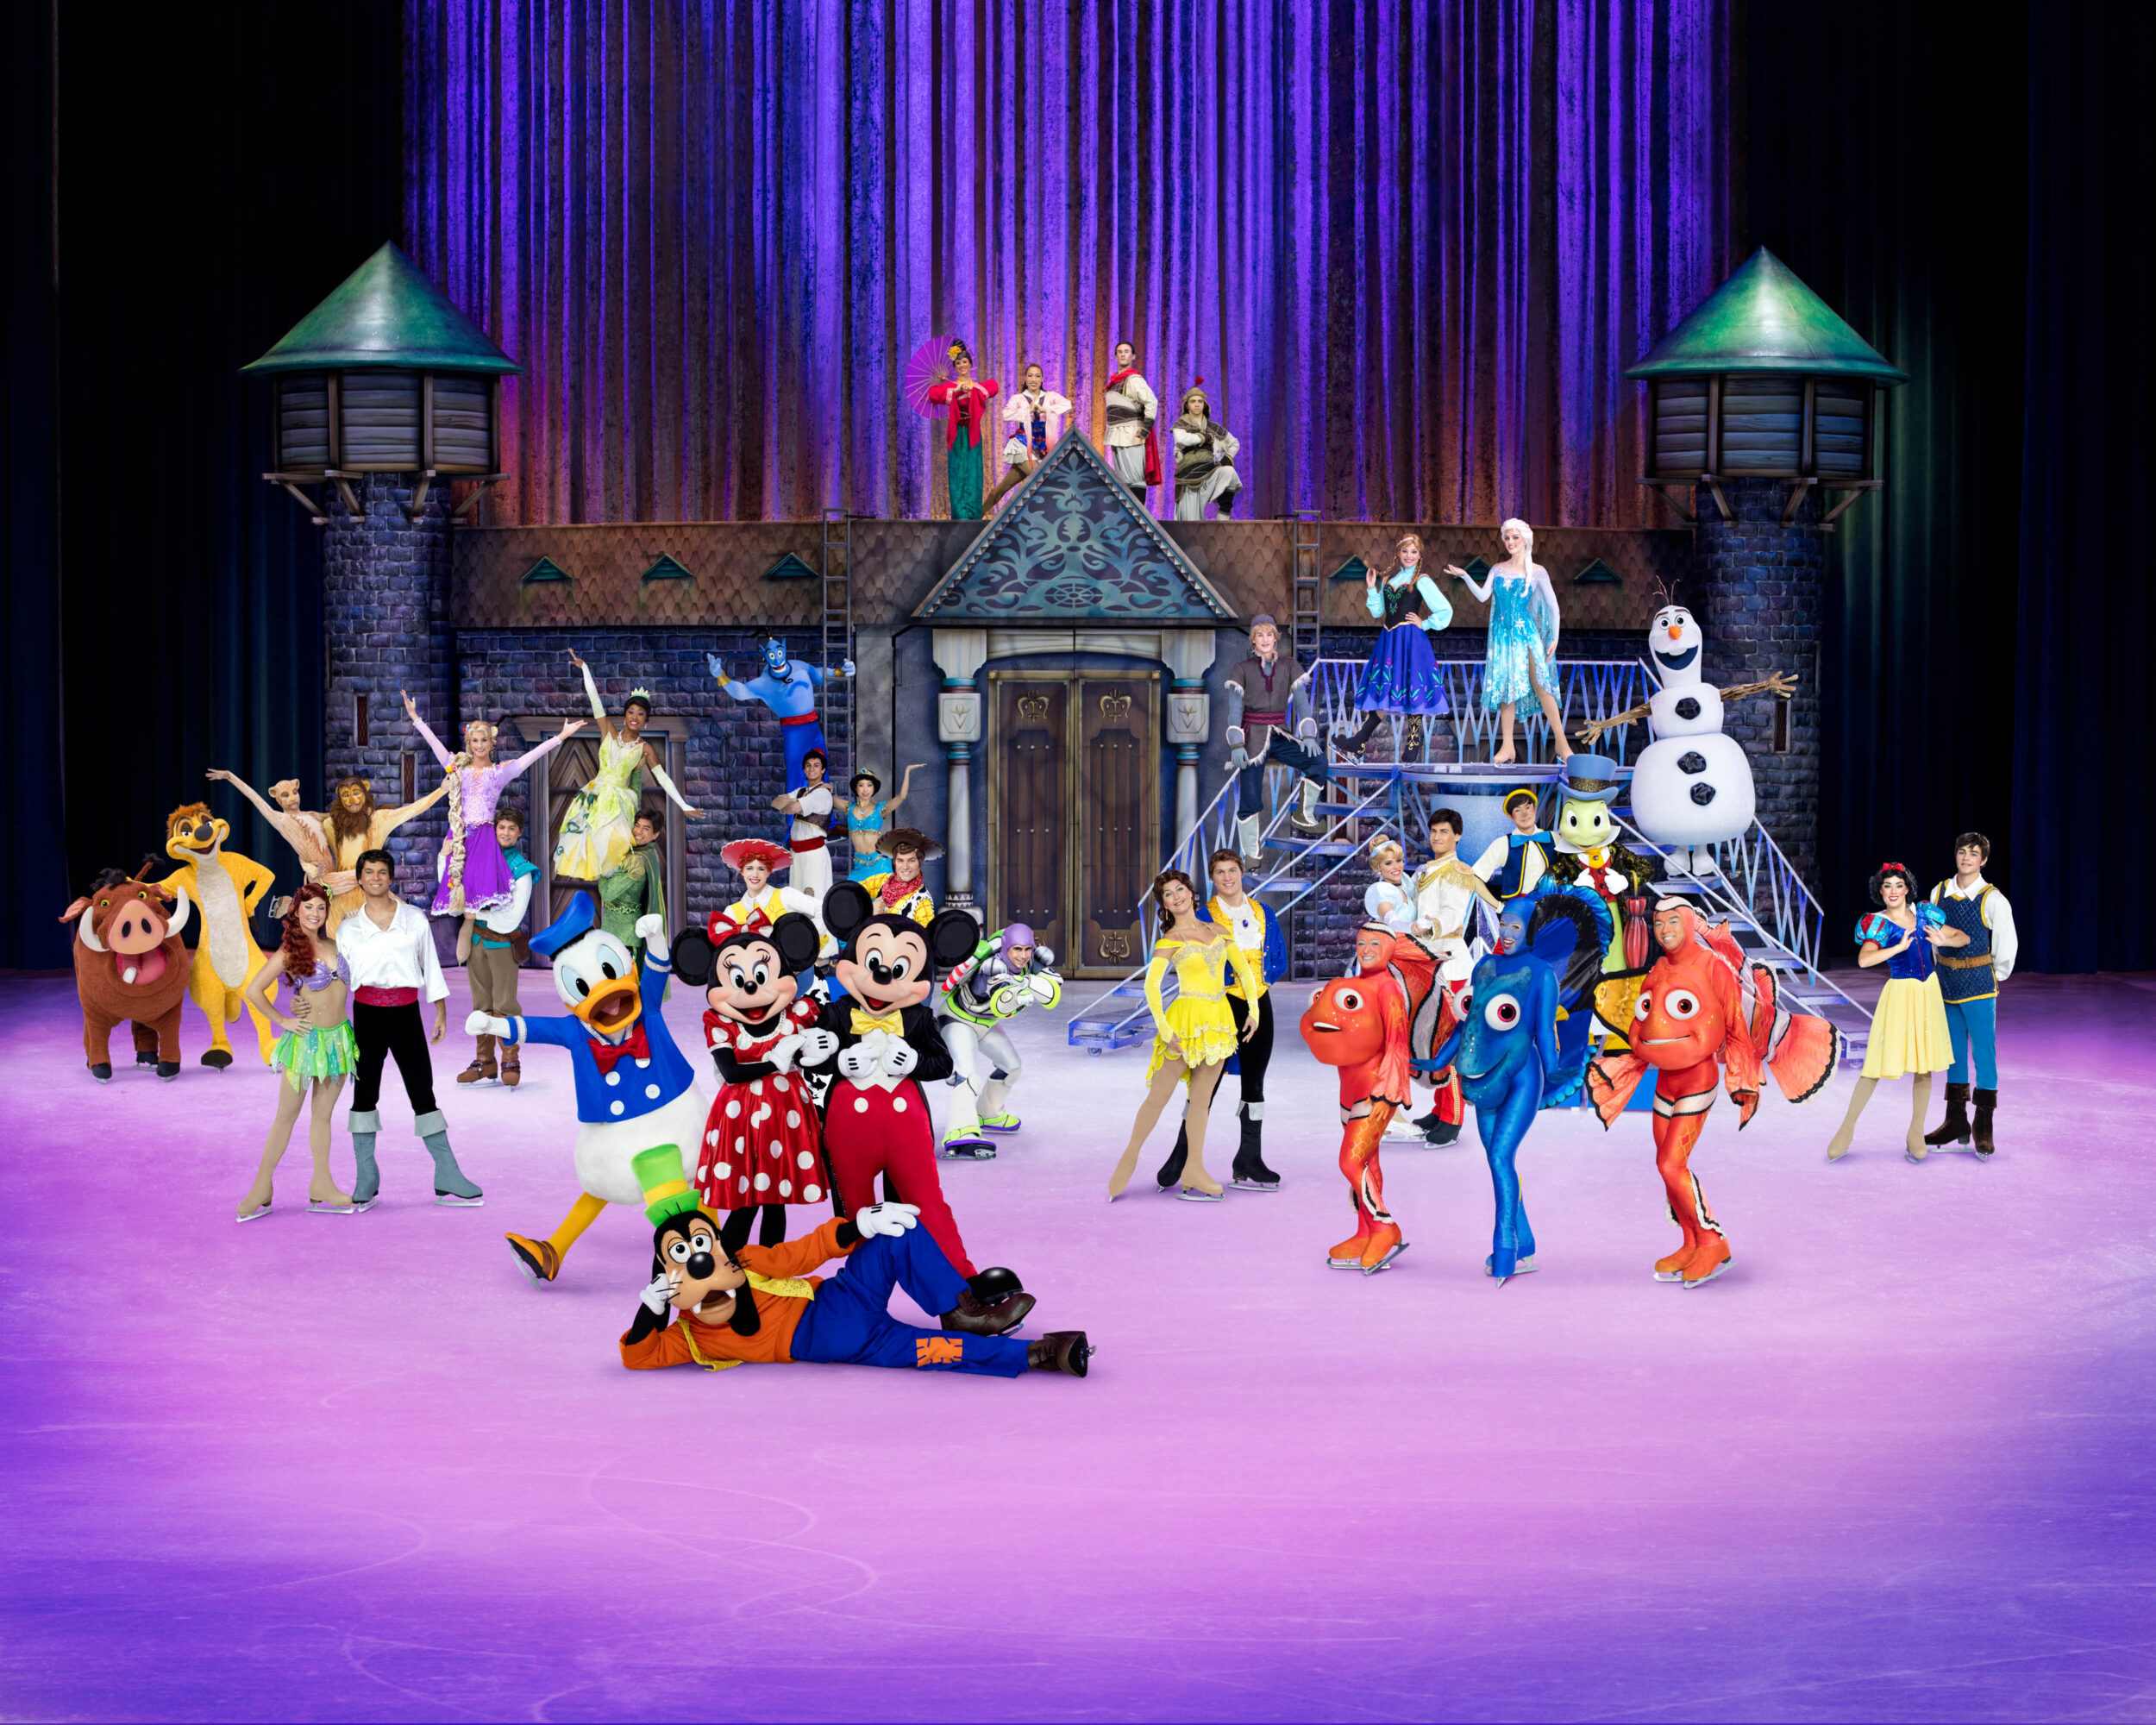 Disney On Ice viert 100 Years of Magic met meer dan 50 Disney characters